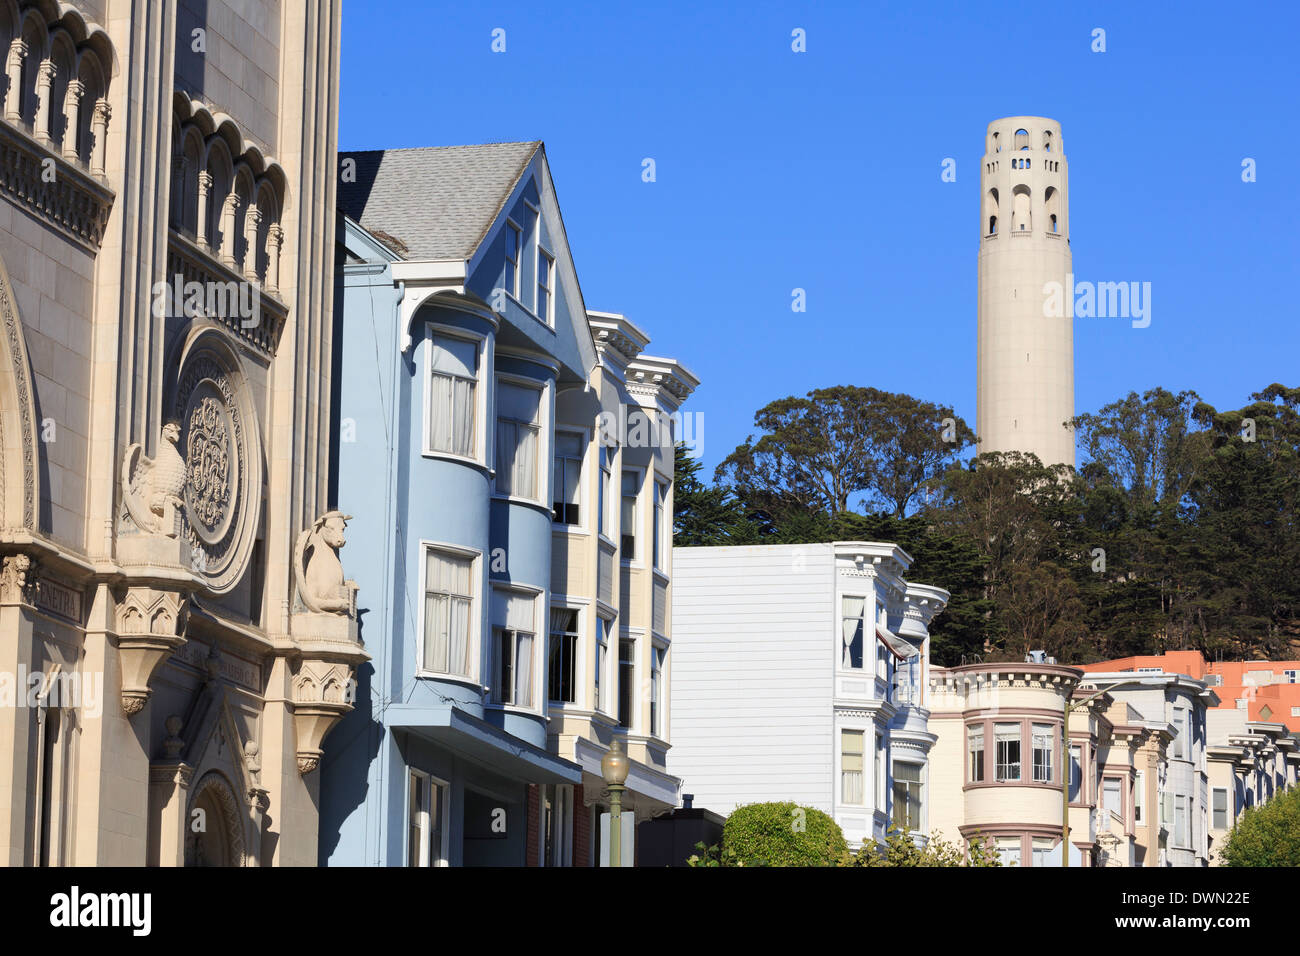 La Coit Tower, North Beach, San Francisco, Californie, États-Unis d'Amérique, Amérique du Nord Banque D'Images